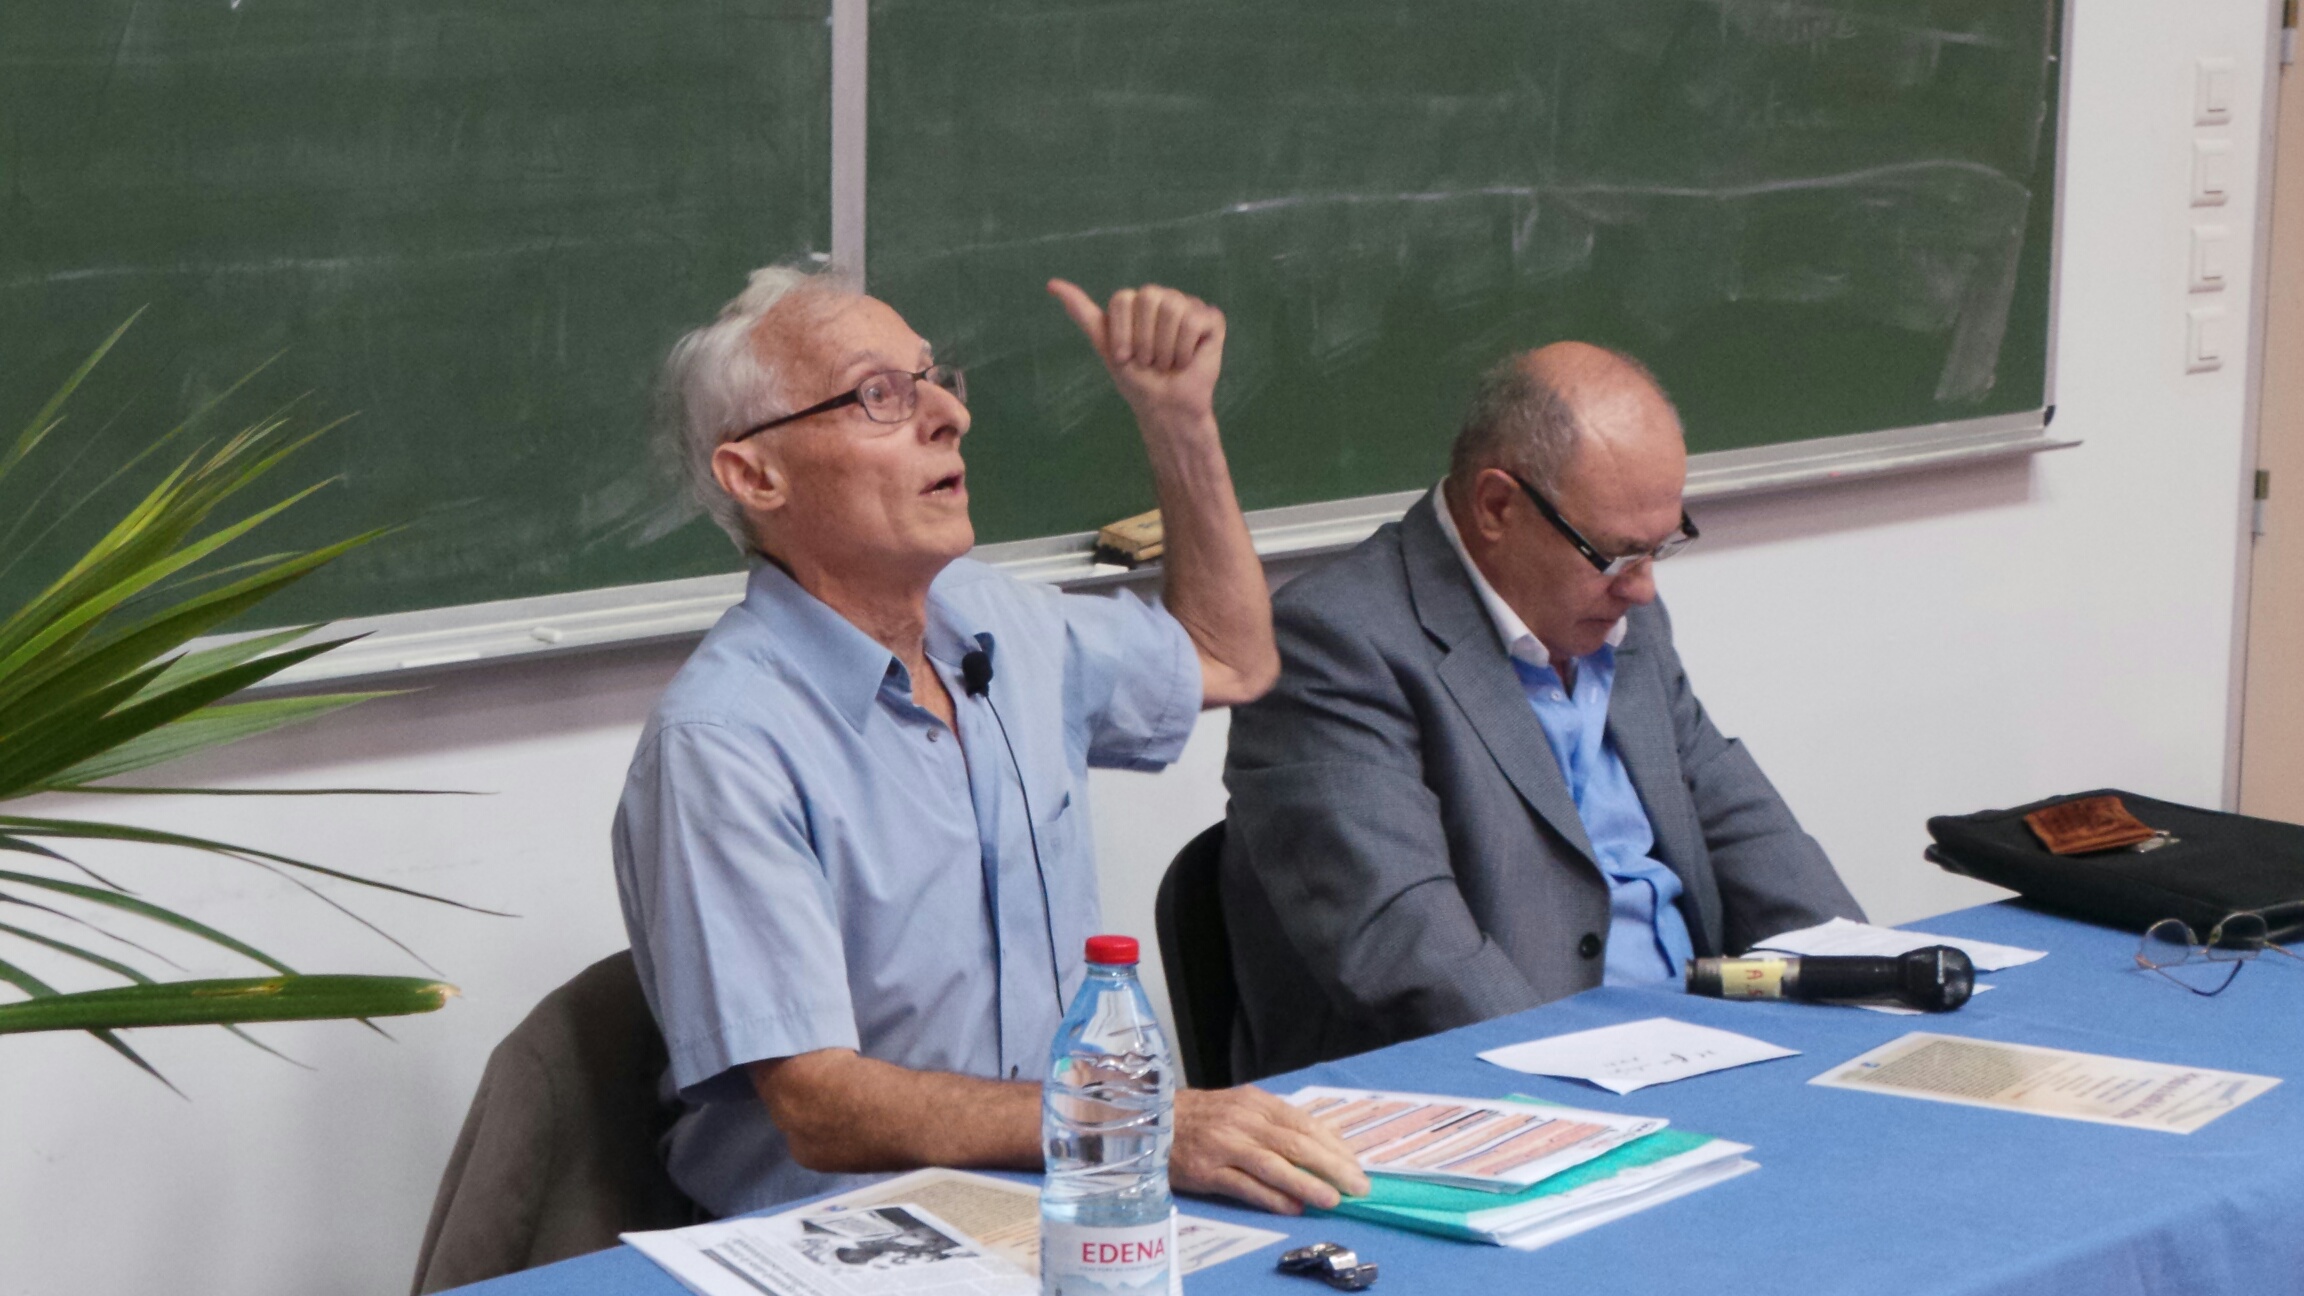 André Oraison interdit de parole à l'université de la Réunion